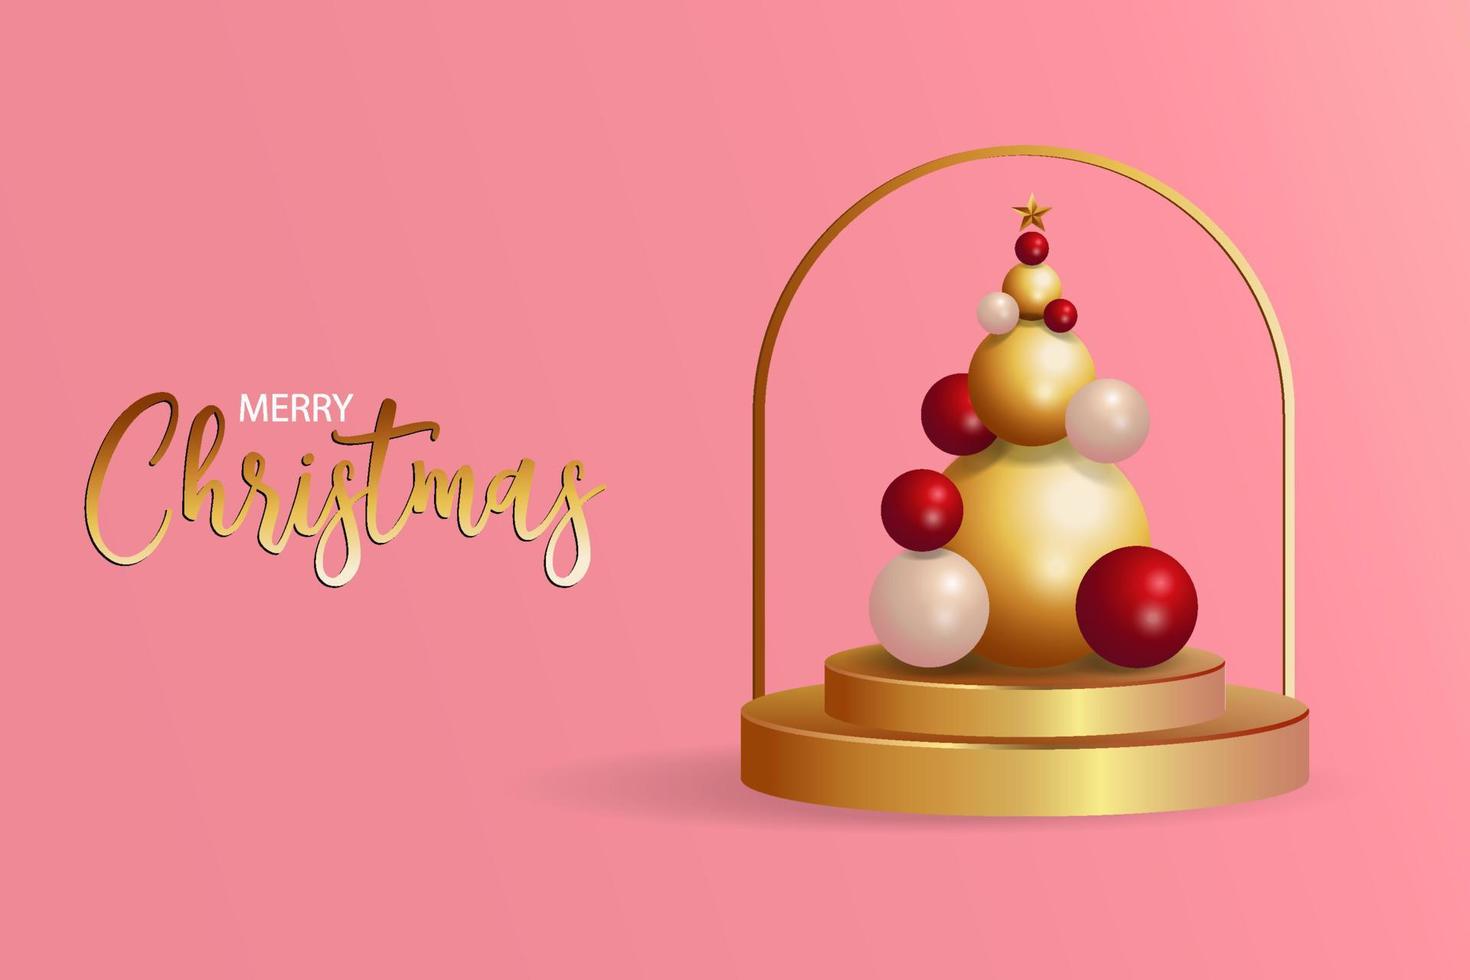 merry christmas achtergrond met gouden podium en abstracte kerstboom vorm met kleur goud, rood en wit. vector ontwerp